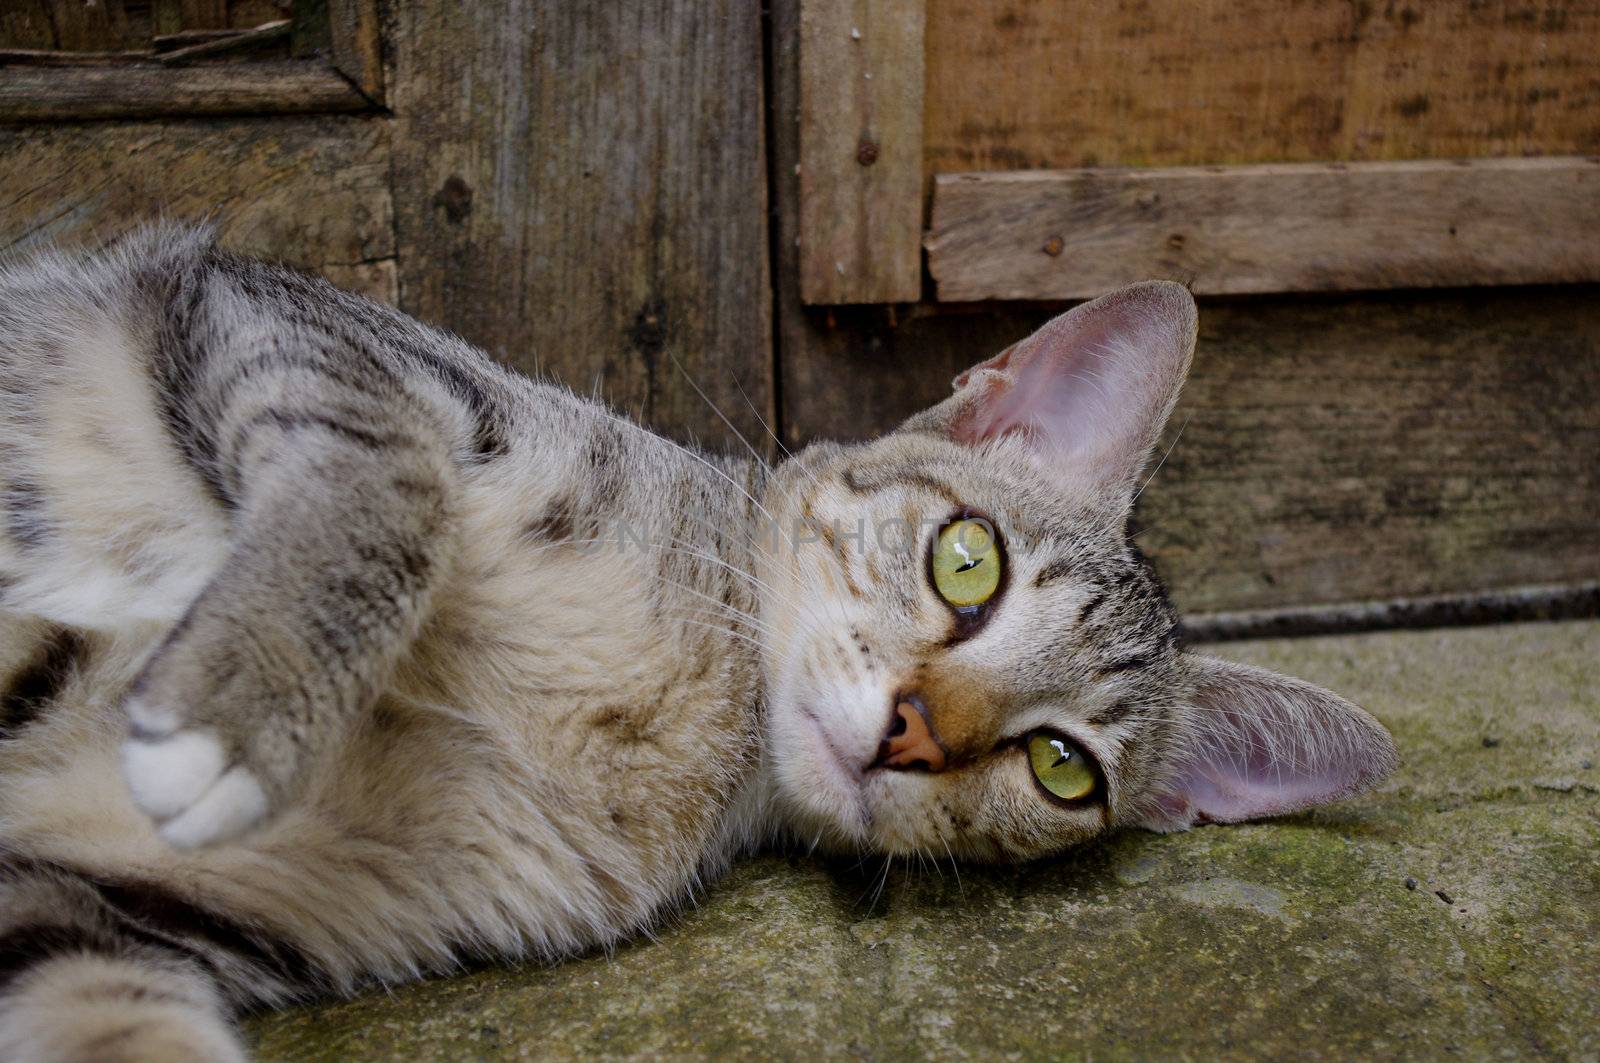 Cat lying outside in front of wooden door.